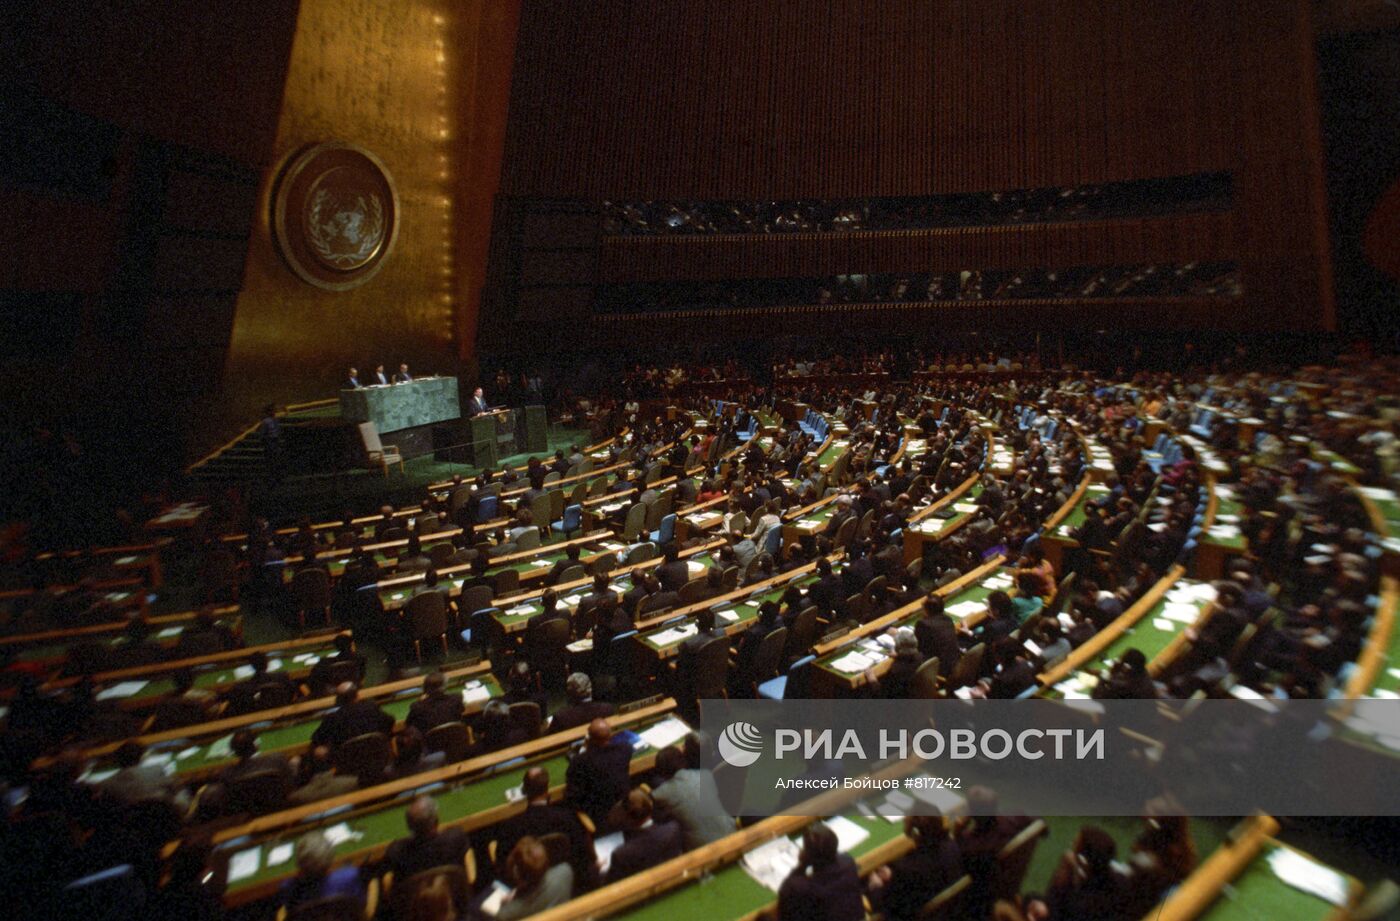 Сессия Генеральной Ассамблеи ООН